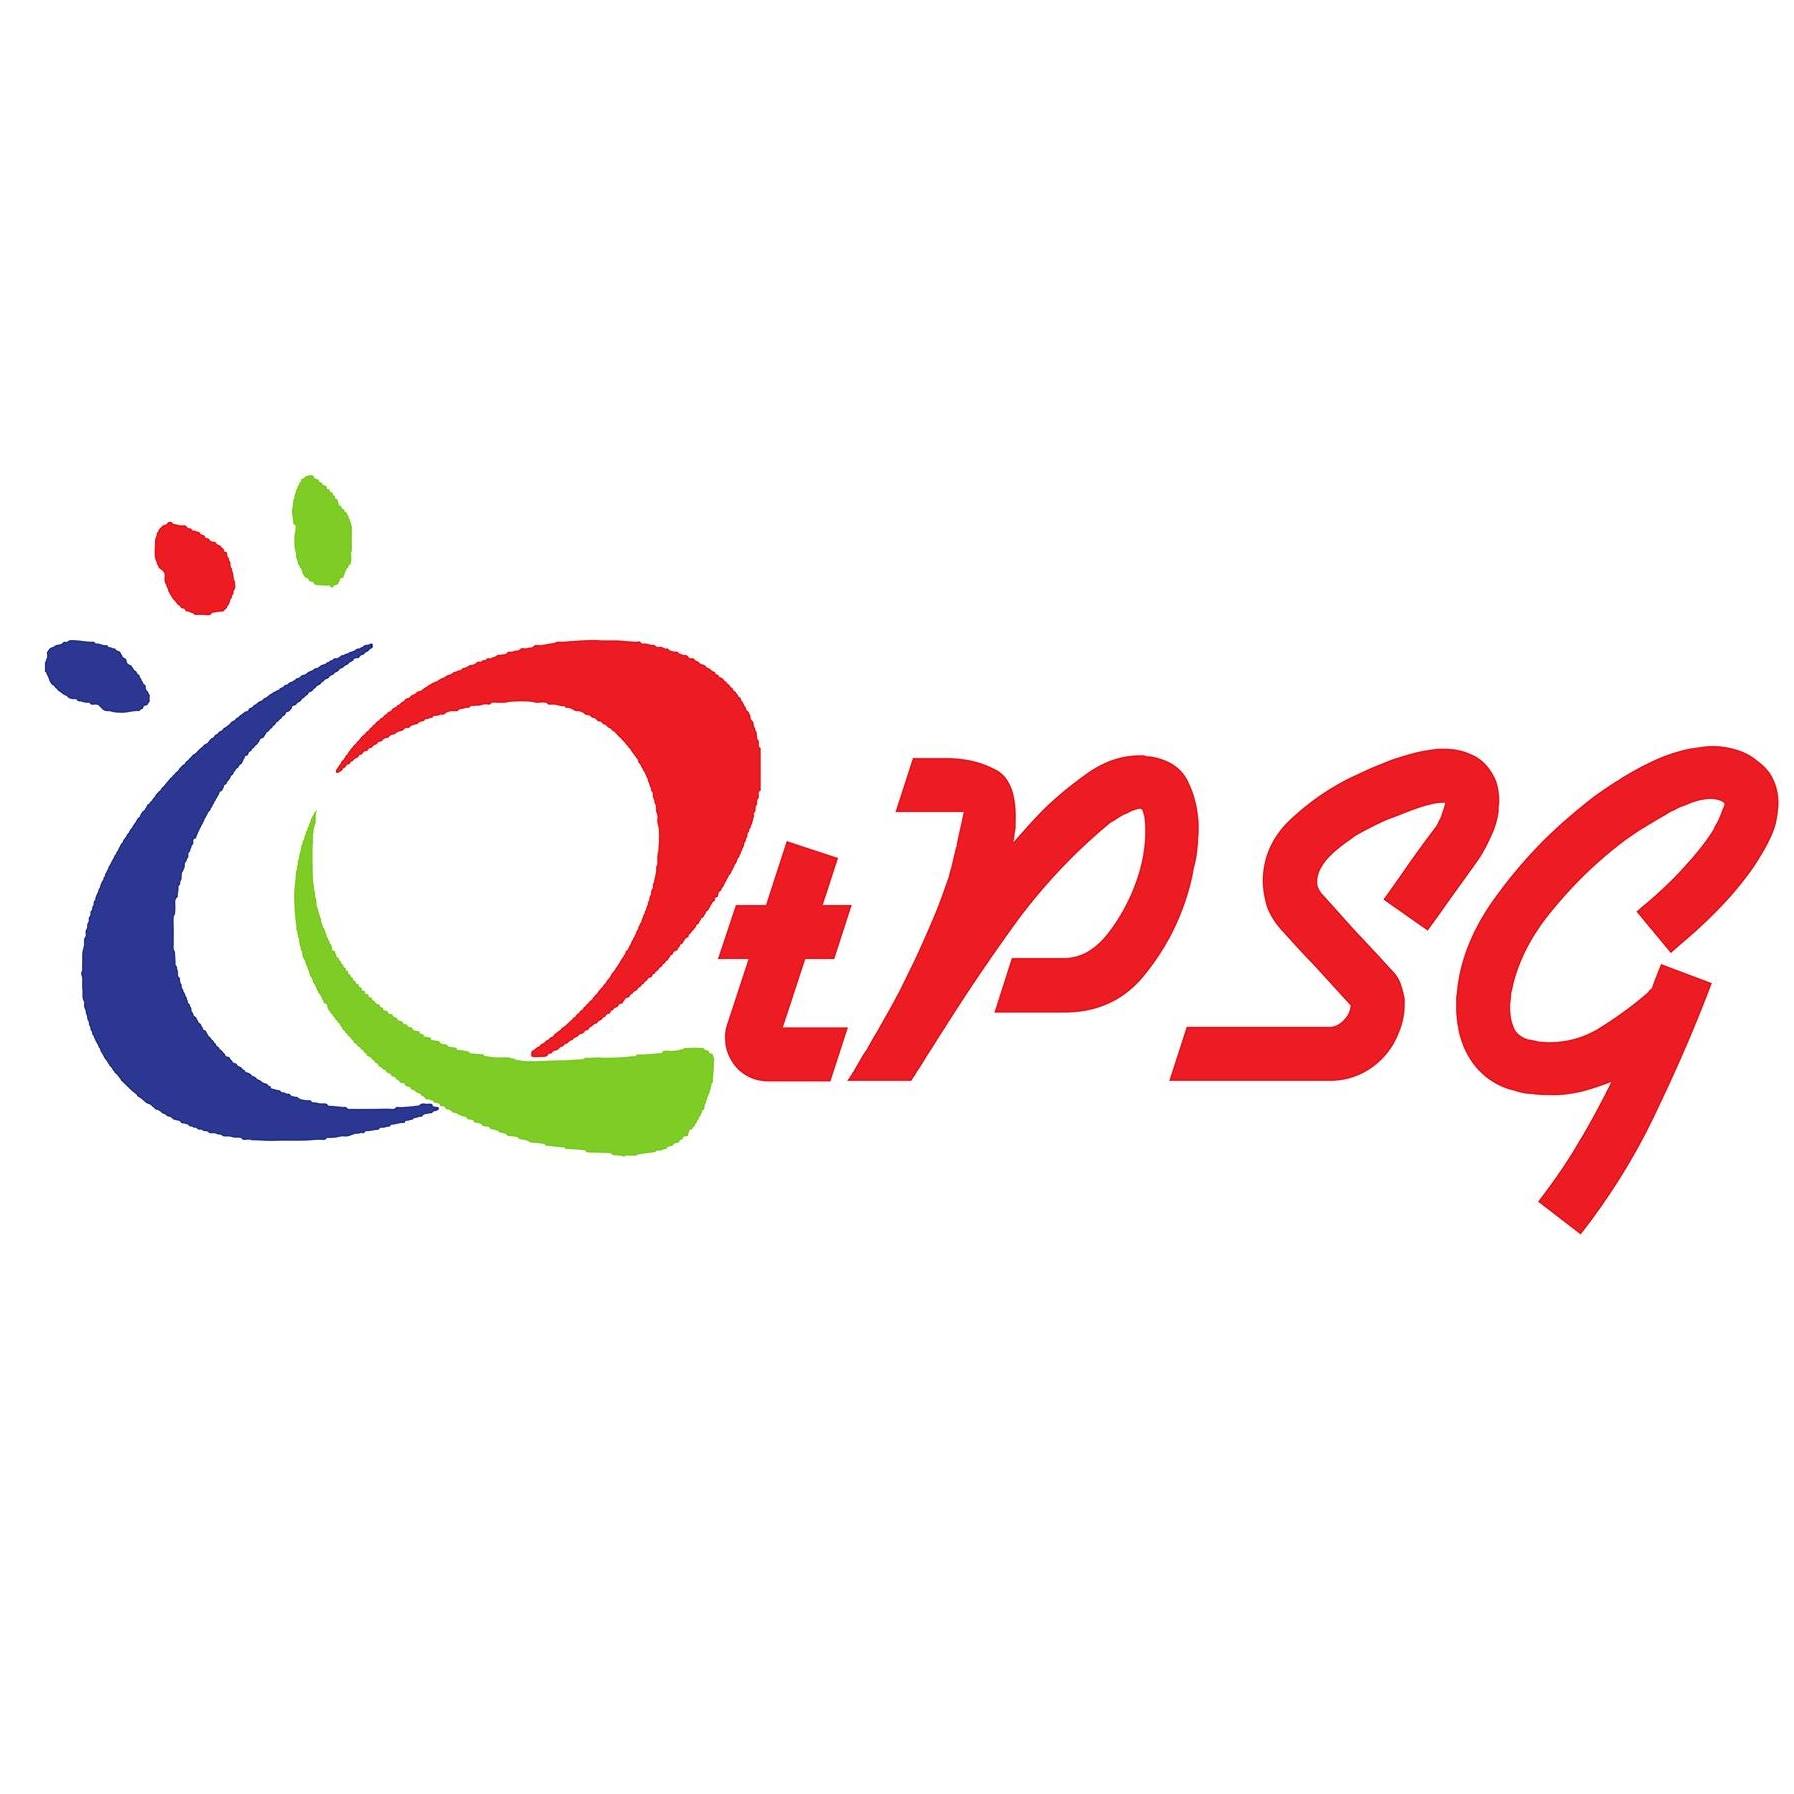 Queenstown Primary School Logo